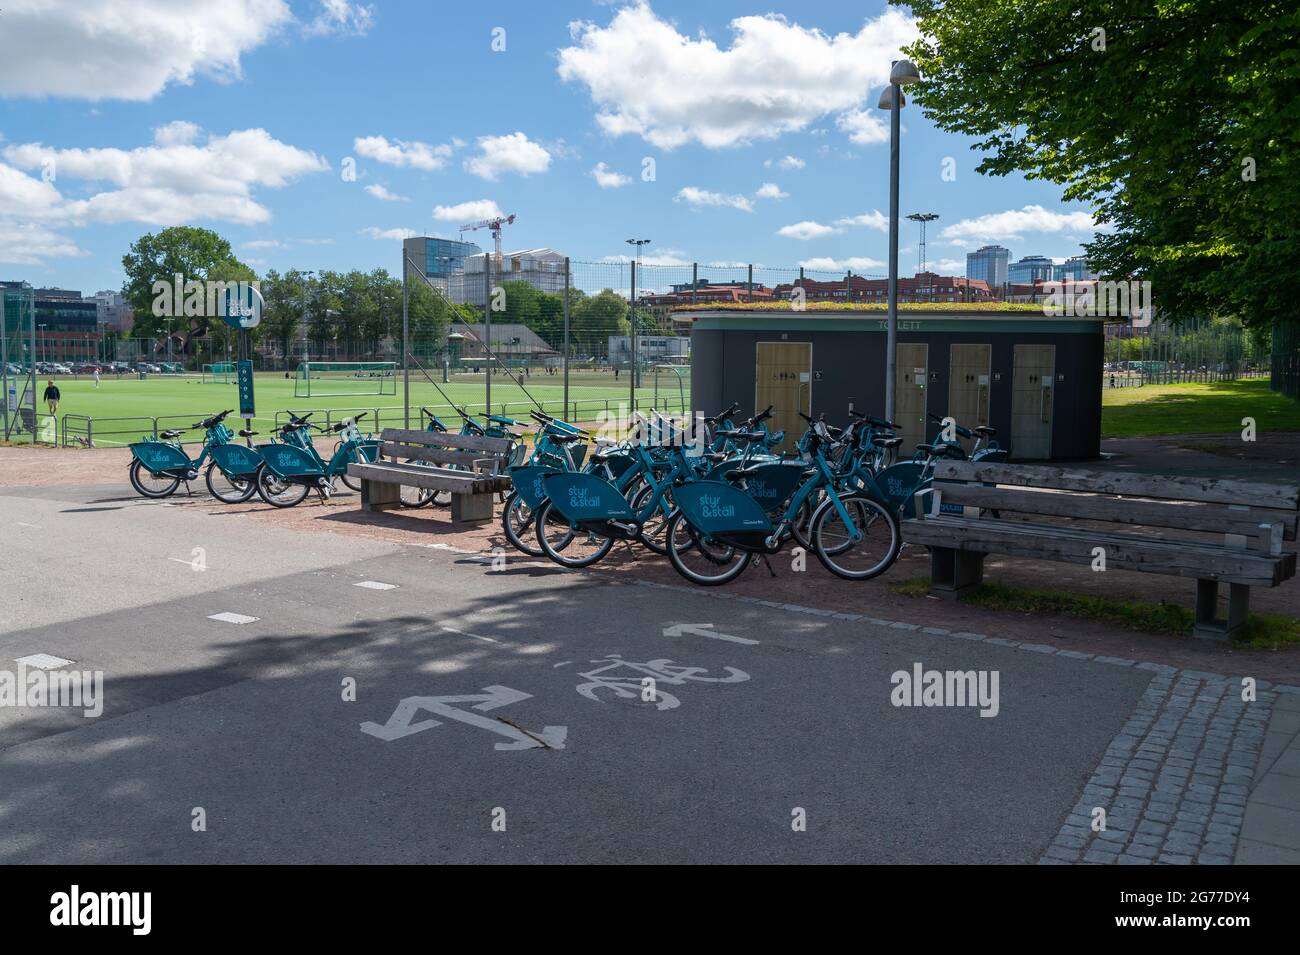 GOTHENBURG, SVEZIA - 16 giu 2021: Una collezione di biciclette a noleggio blu nella città di Gothenburg, dalla società Styr och Stall. Foto Stock